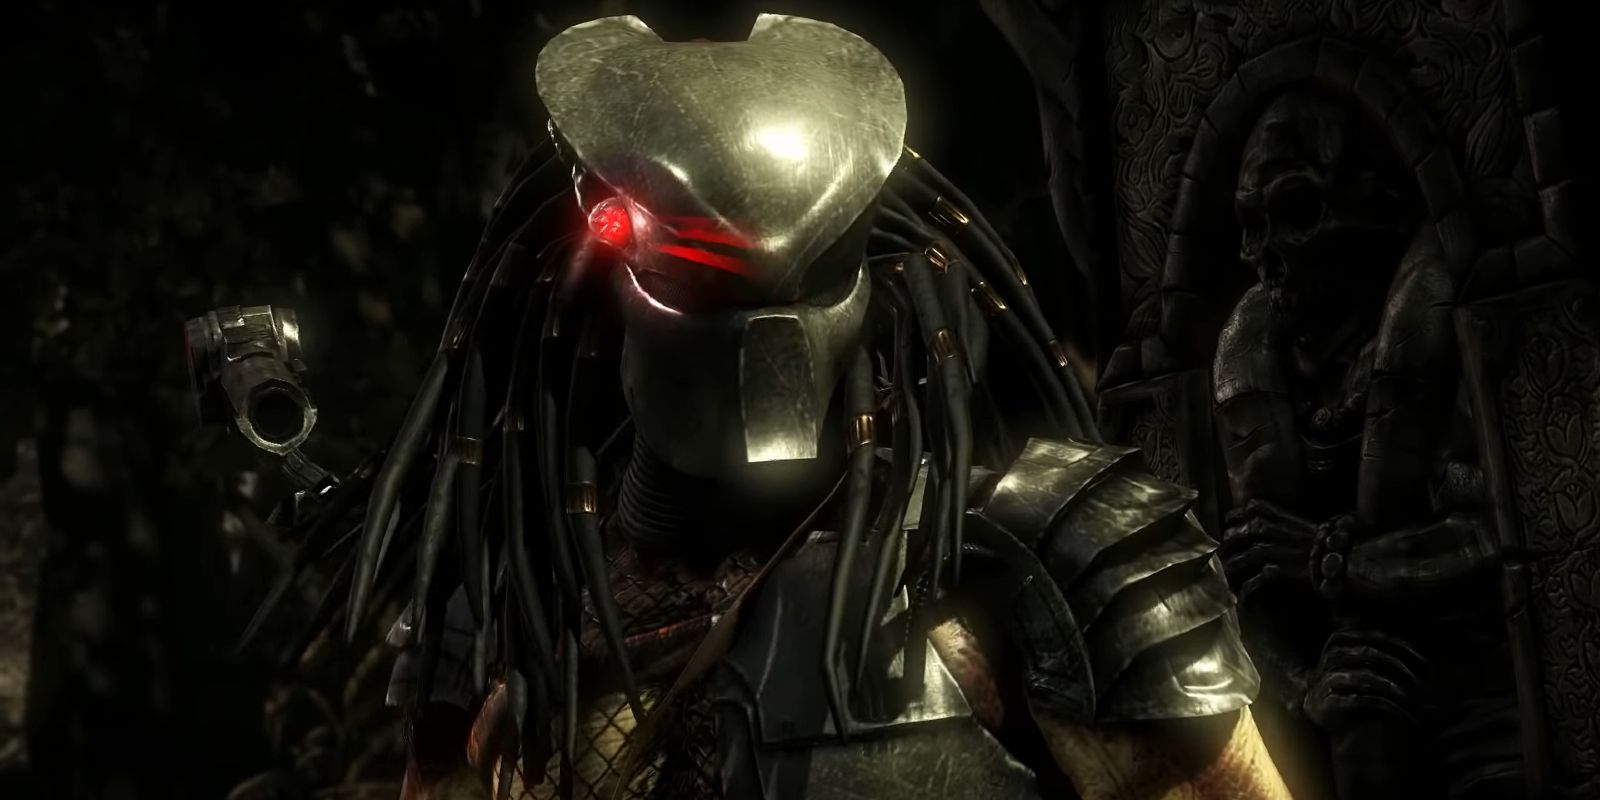 Predator Aiming His Plasmacaster - Mortal Kombat X